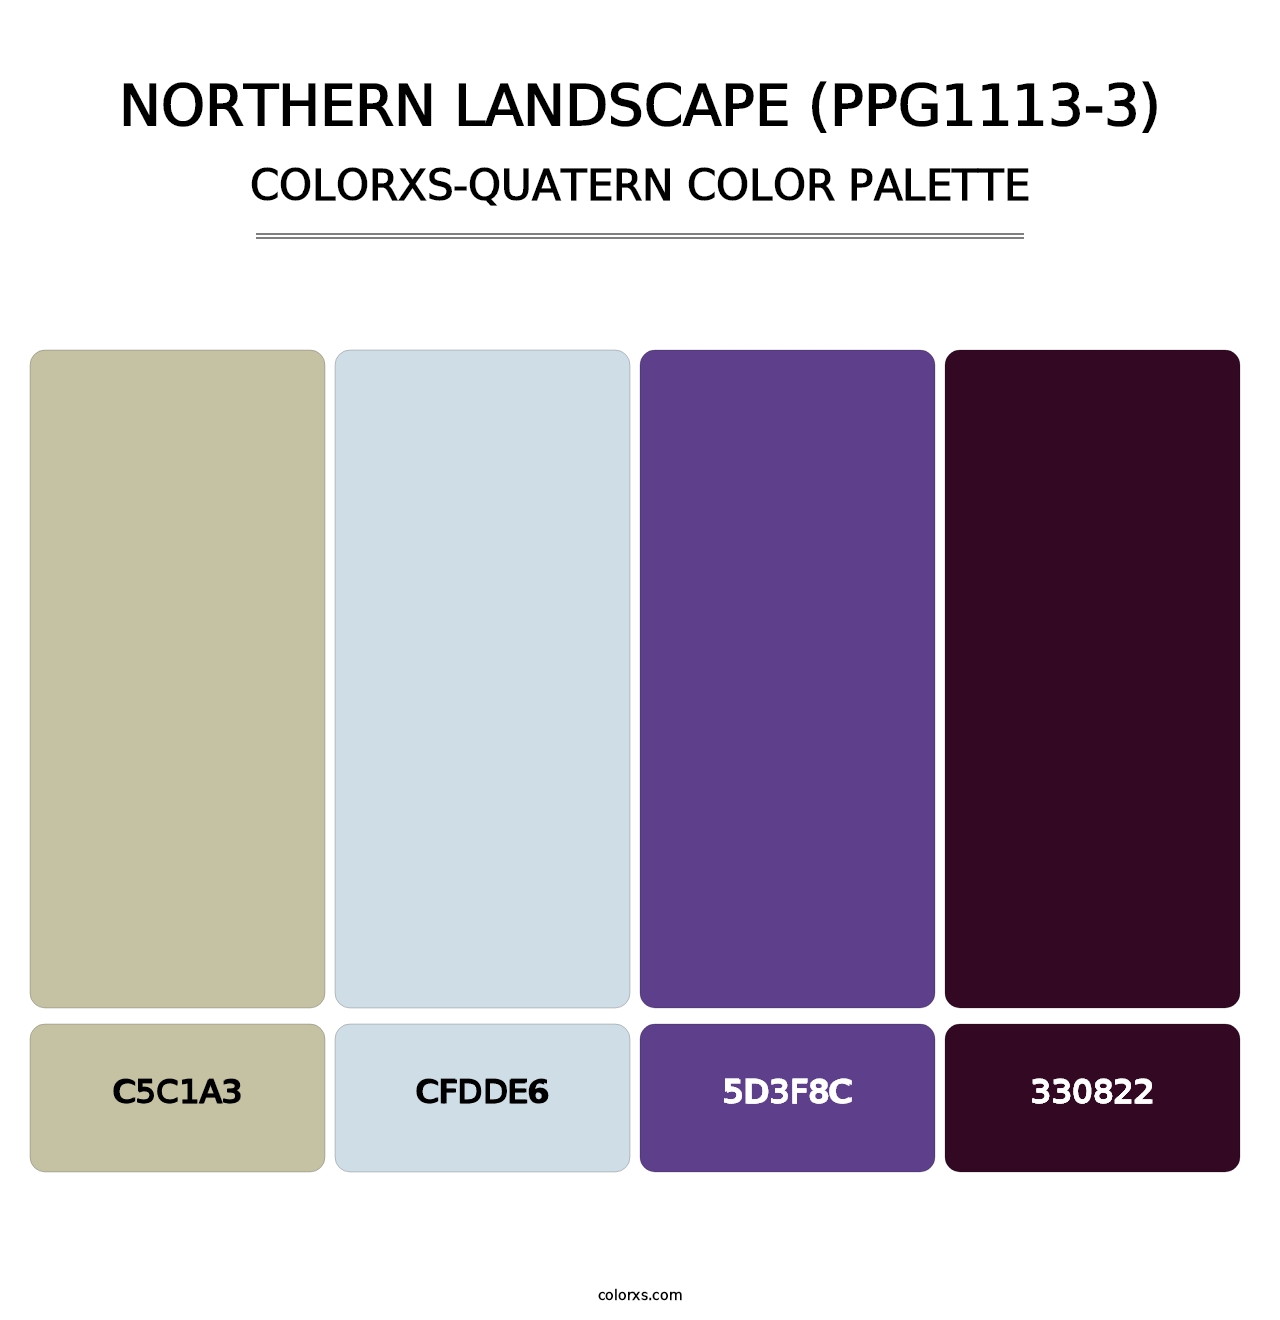 Northern Landscape (PPG1113-3) - Colorxs Quatern Palette